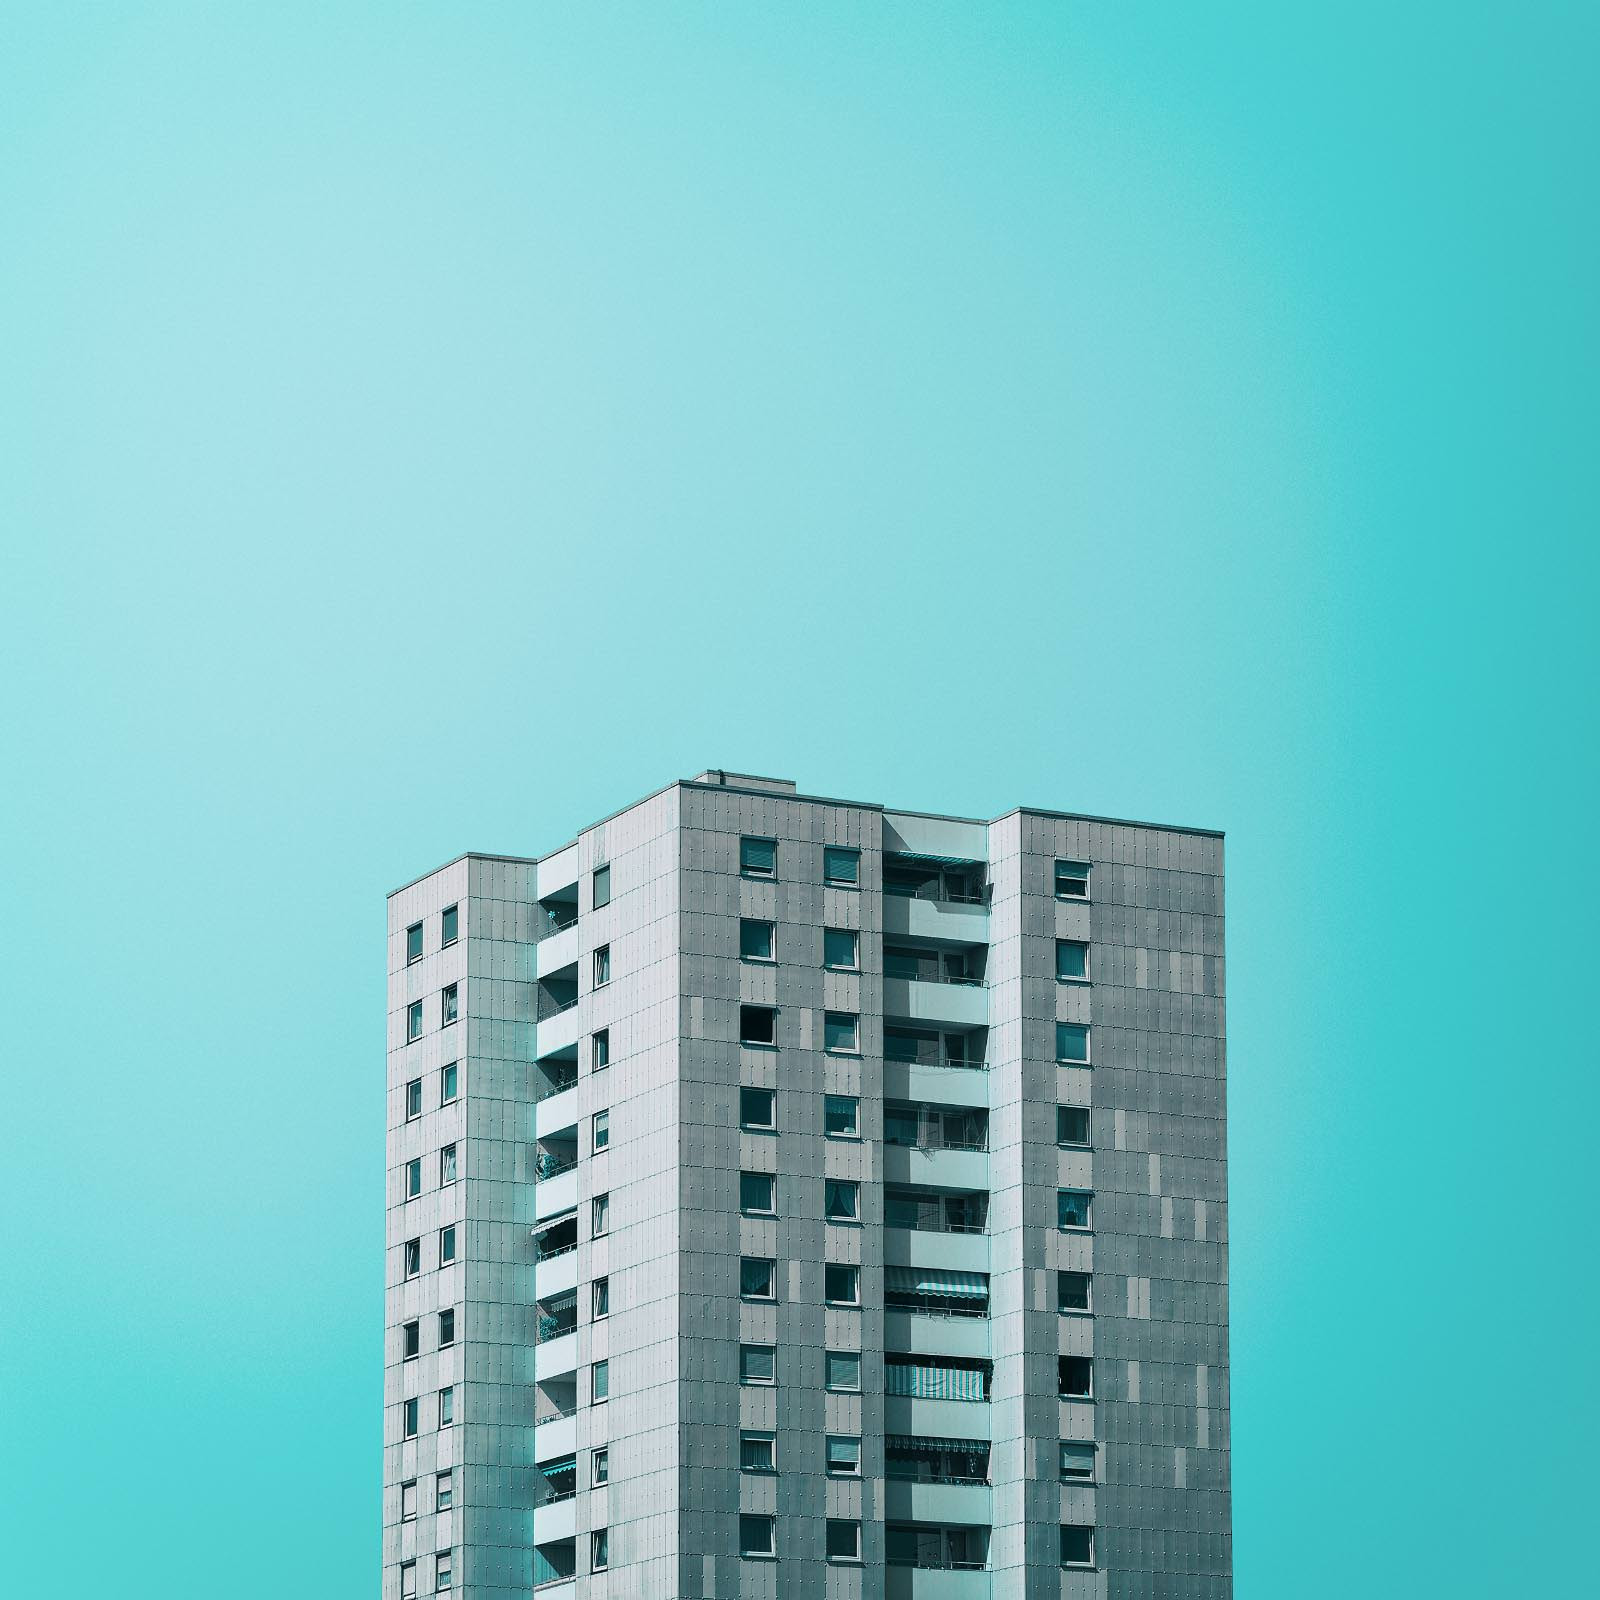 Wohnhaus in München vor blauem Hintergrund